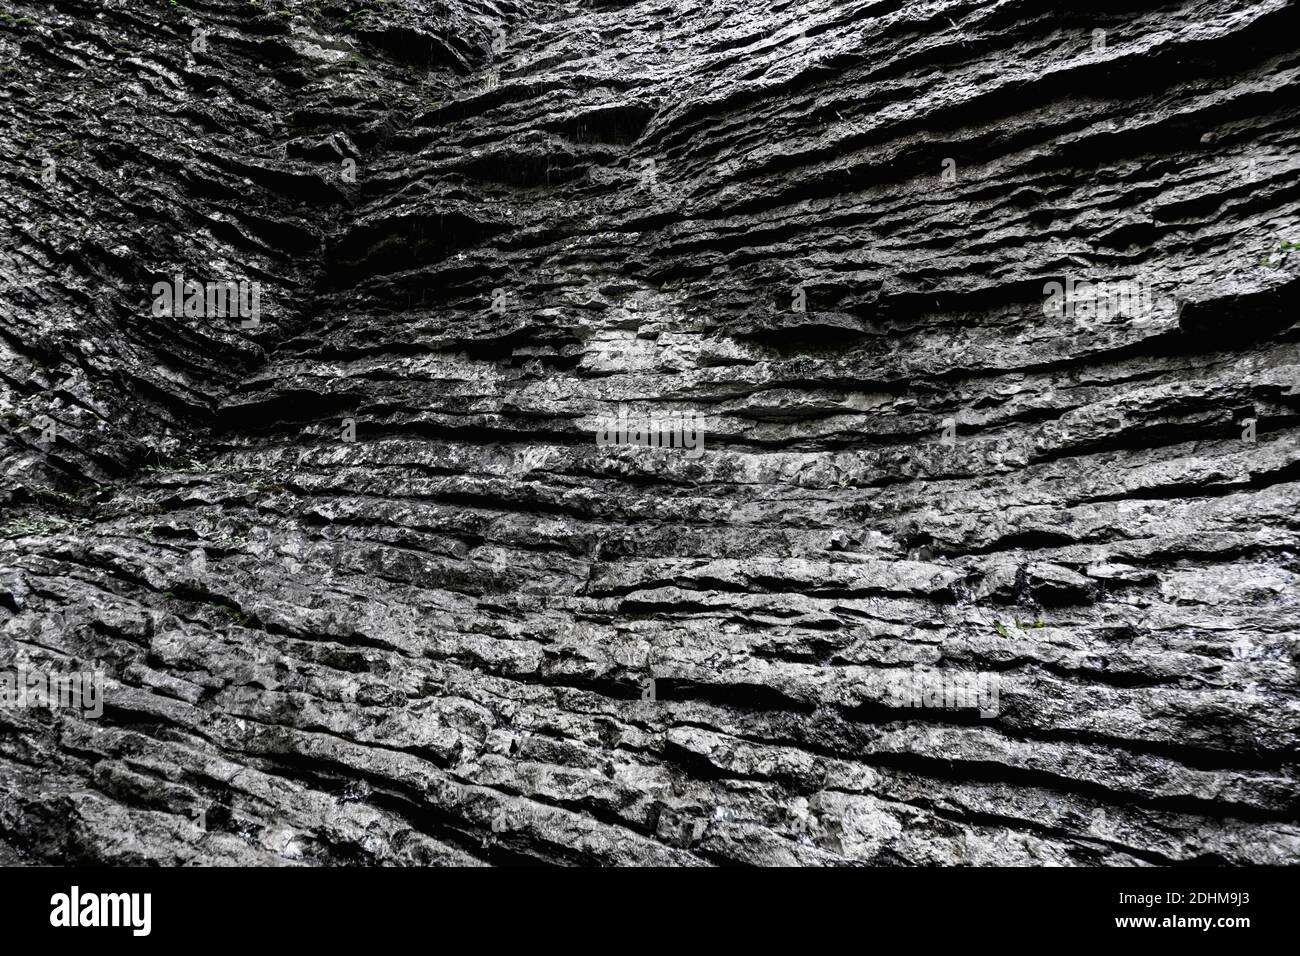 Motif naturel sur le rocher en Allemagne, superbe fond, monochrome Banque D'Images